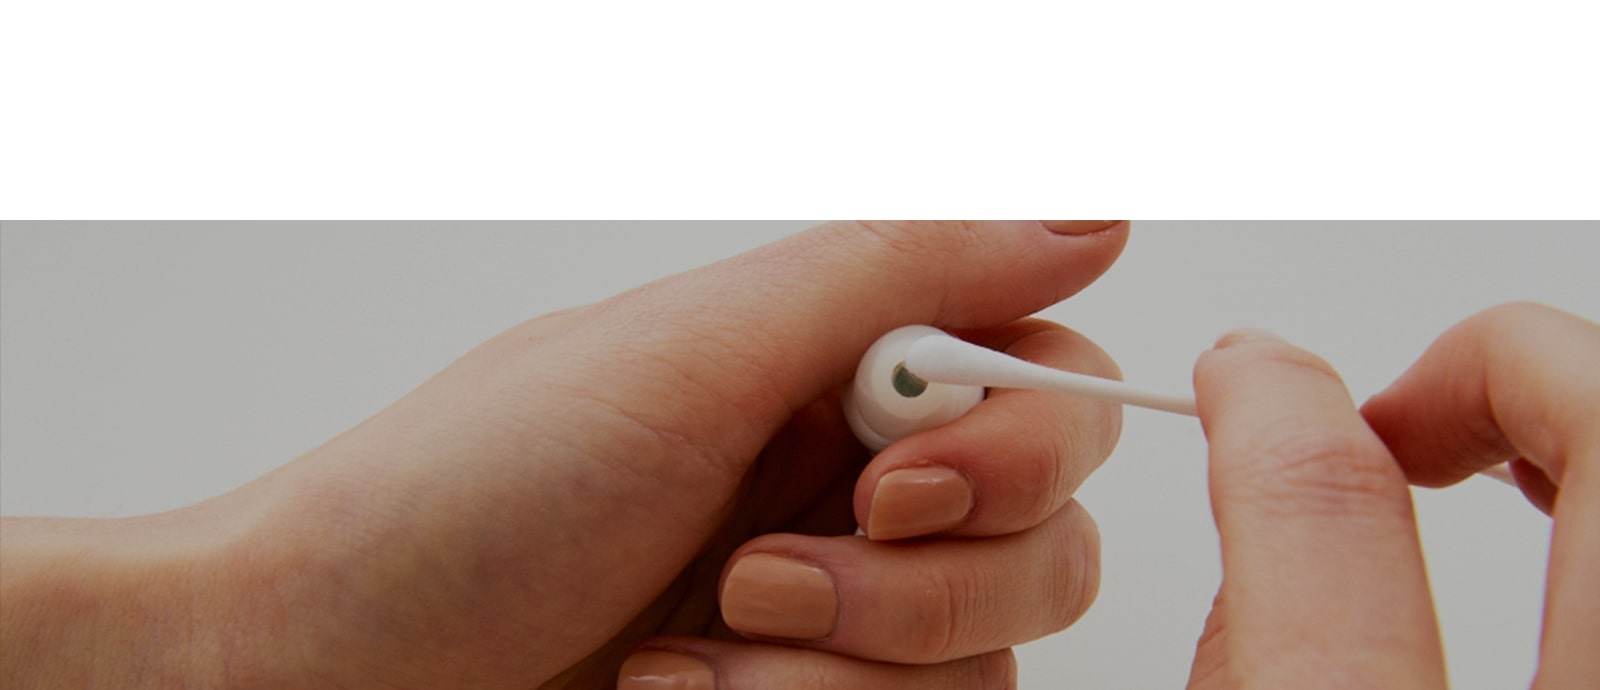 Навушники в руці, які протирають тампоном; зображення демонструє небезпеку бактерій на навушниках.